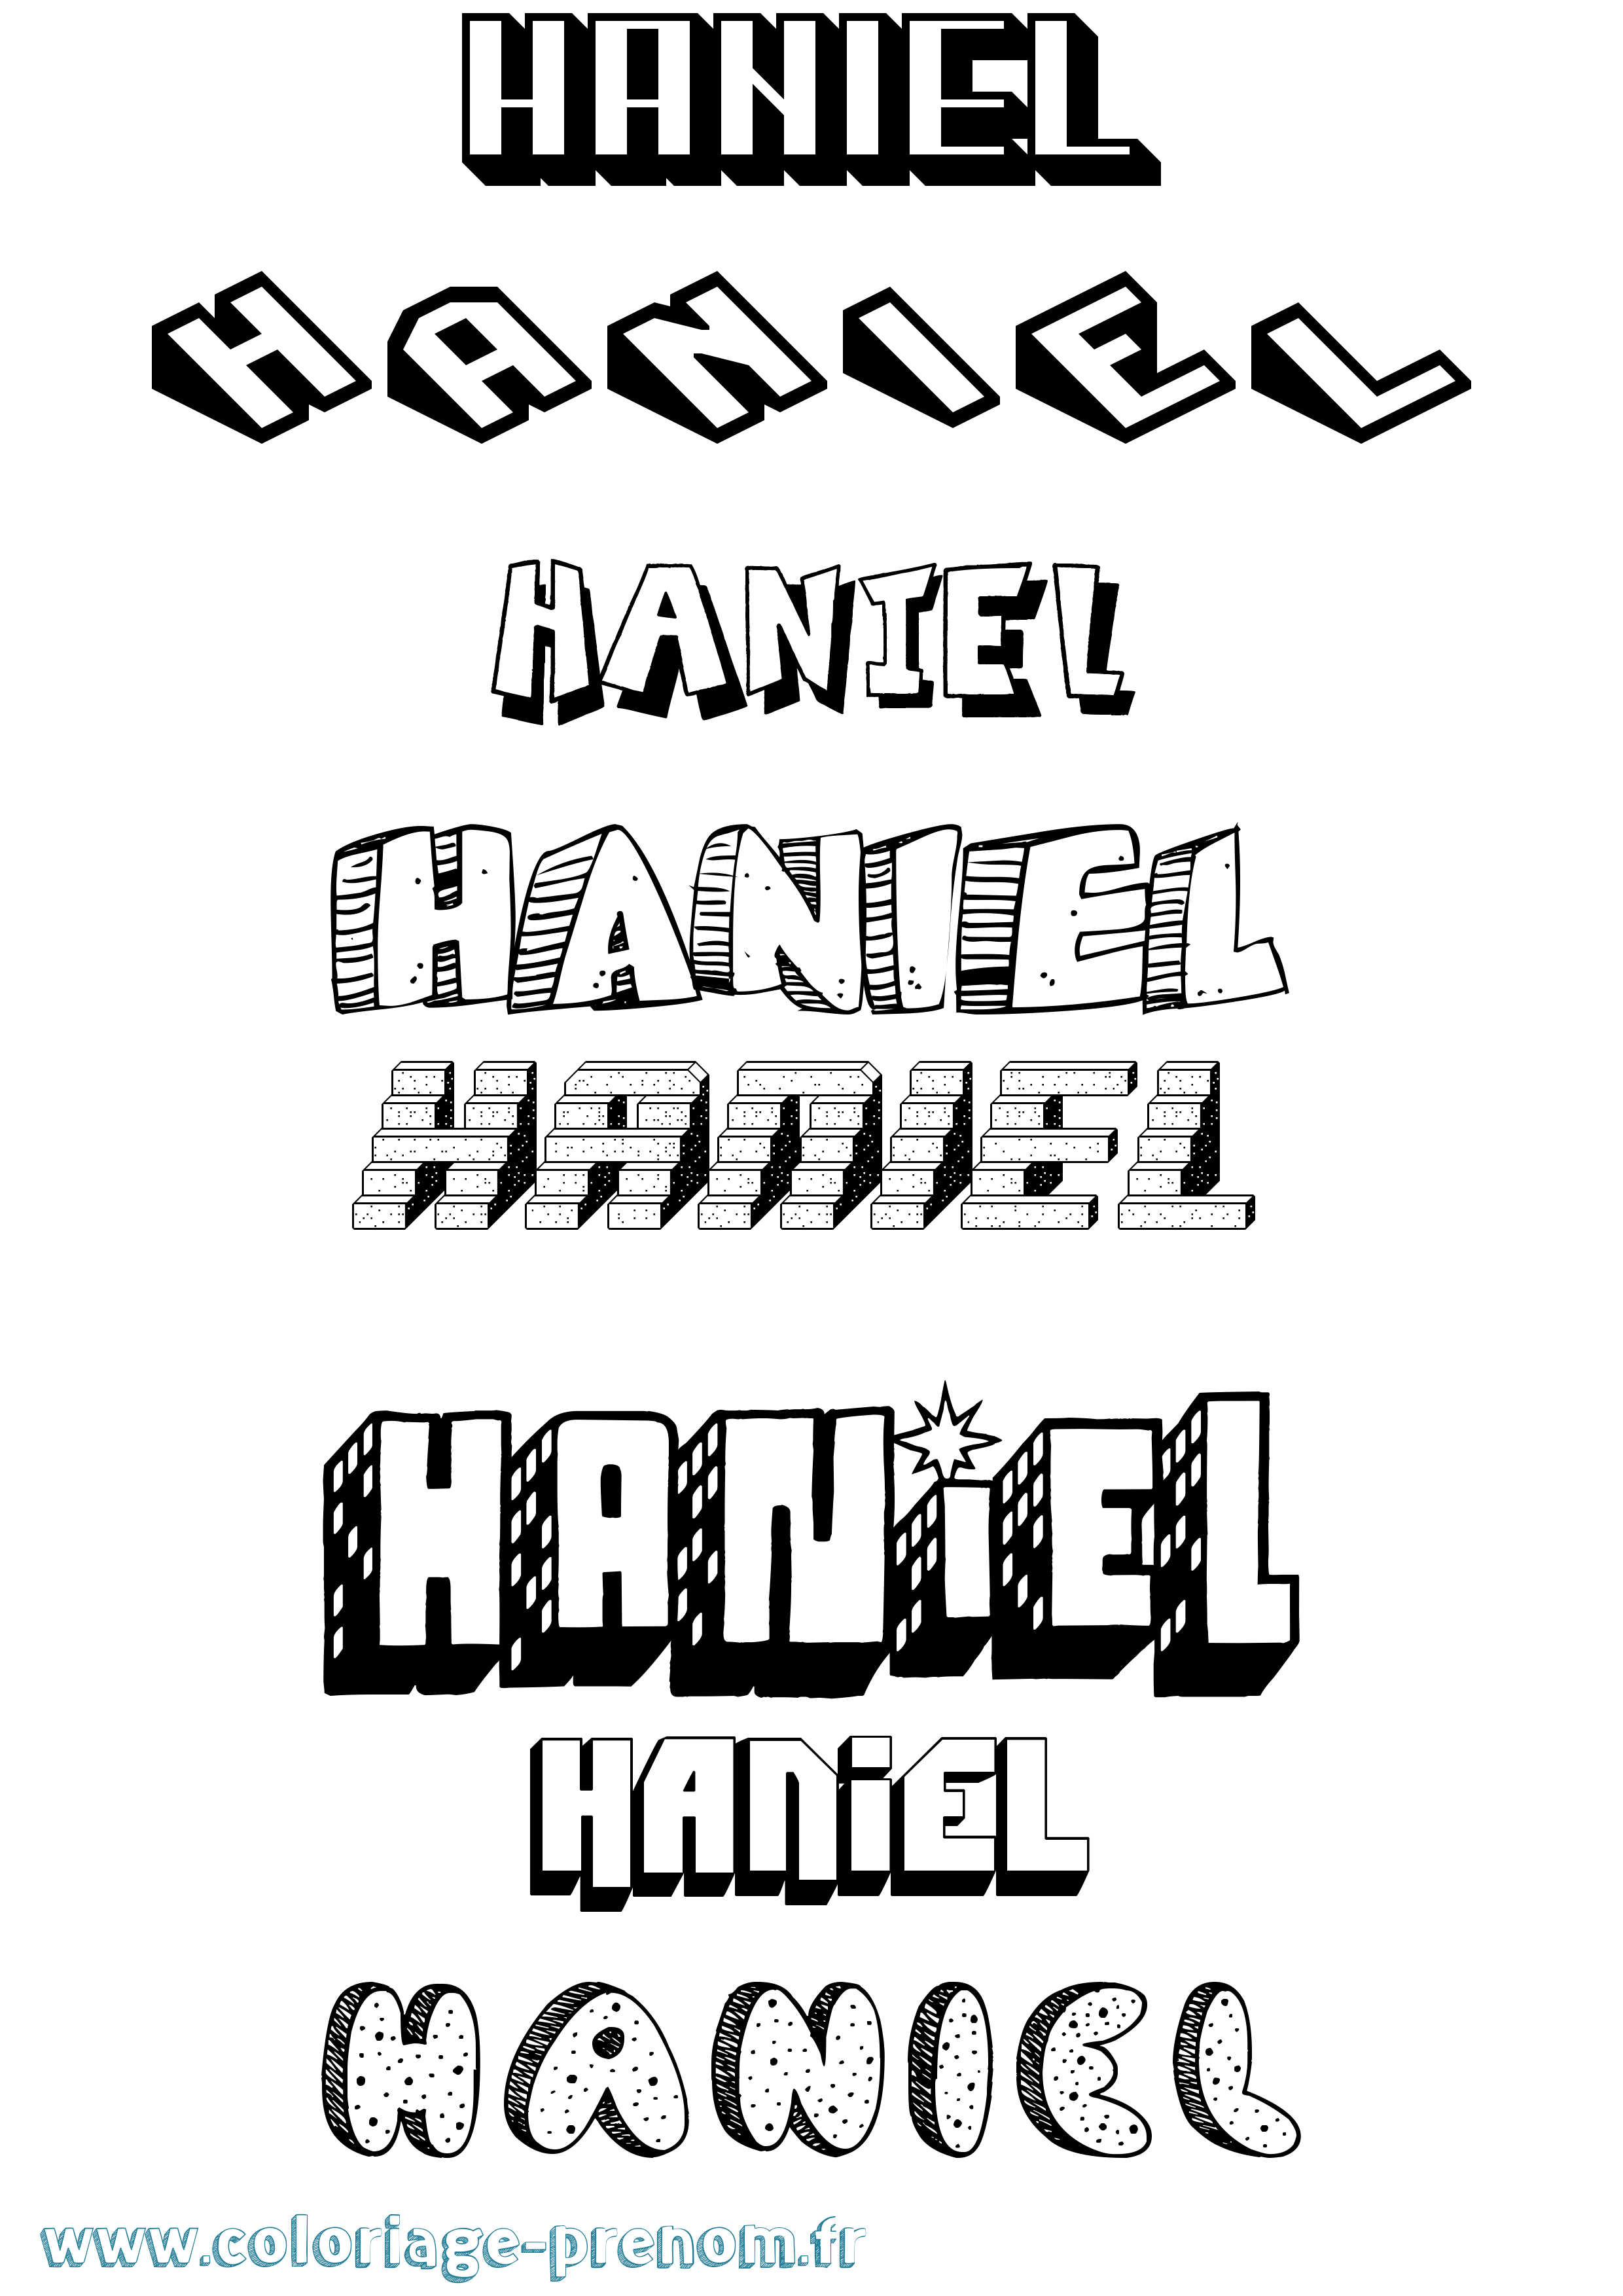 Coloriage prénom Haniel Effet 3D